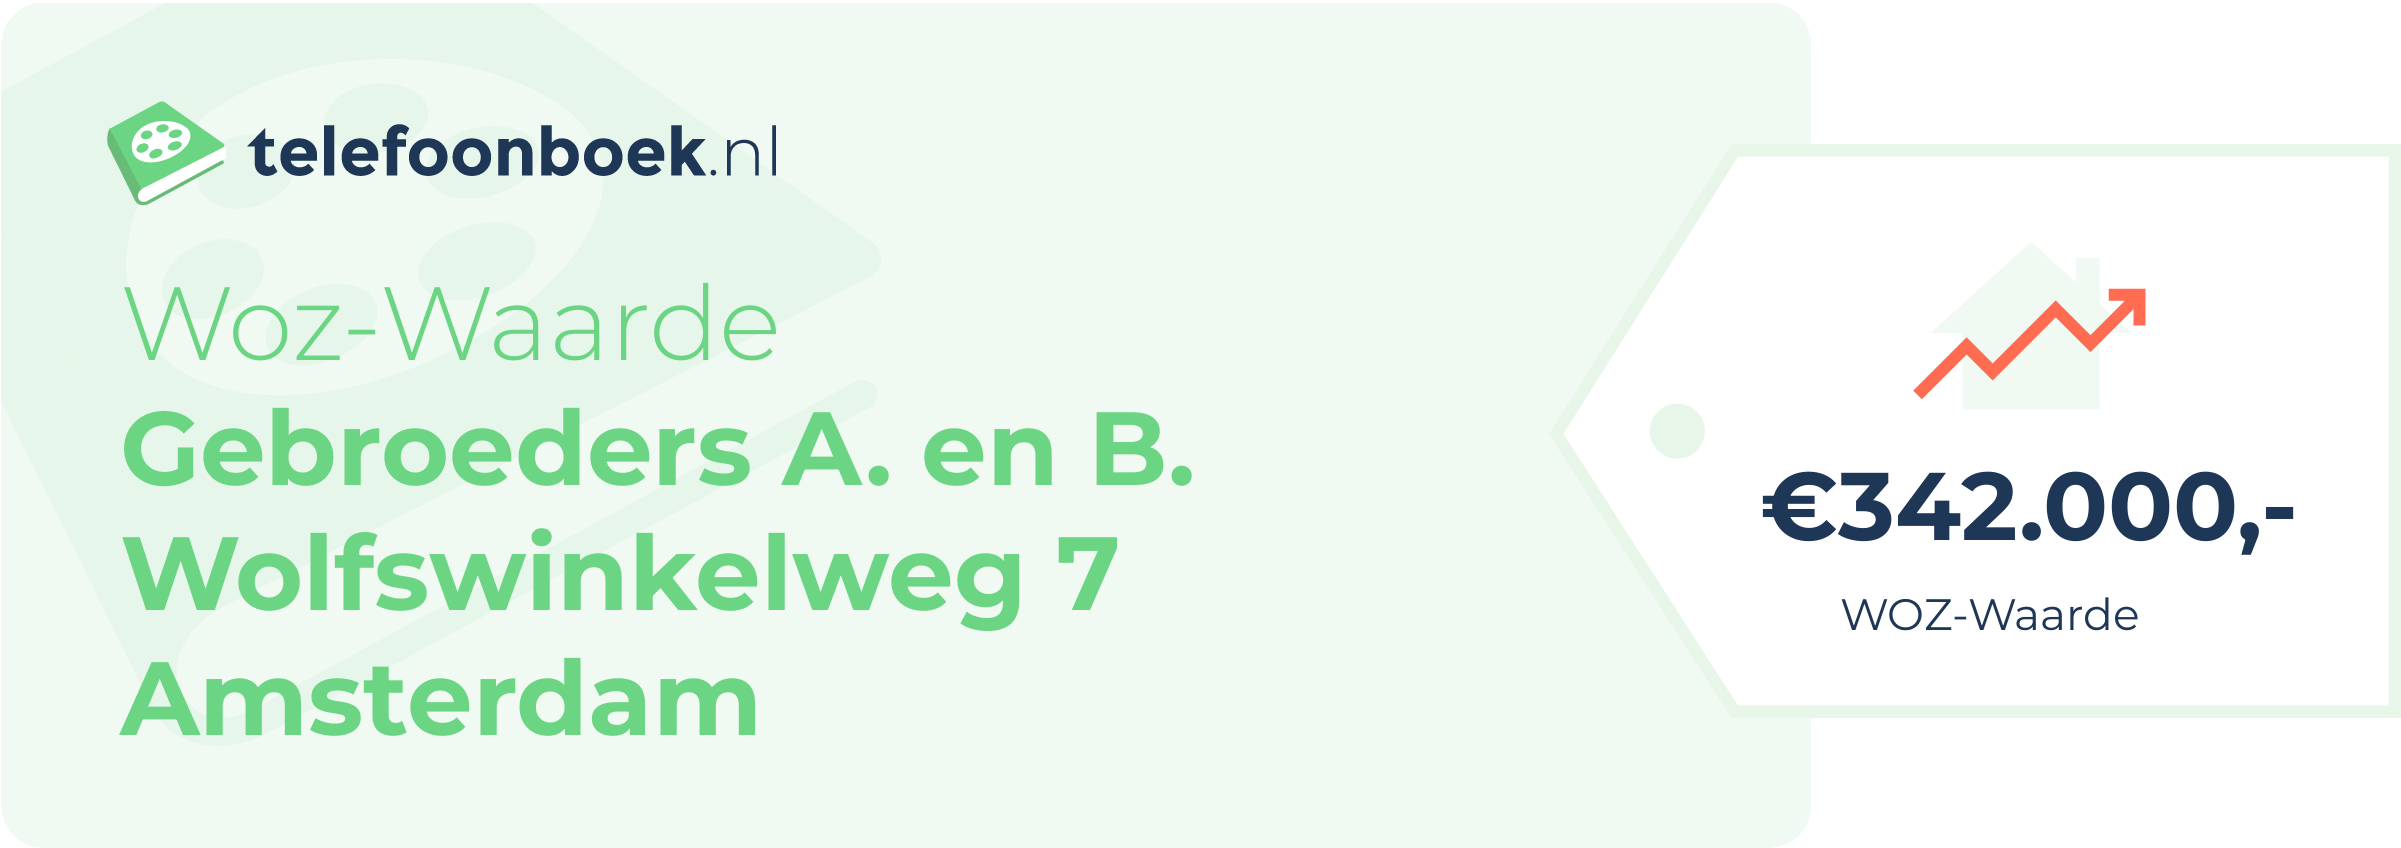 WOZ-waarde Gebroeders A. En B. Wolfswinkelweg 7 Amsterdam